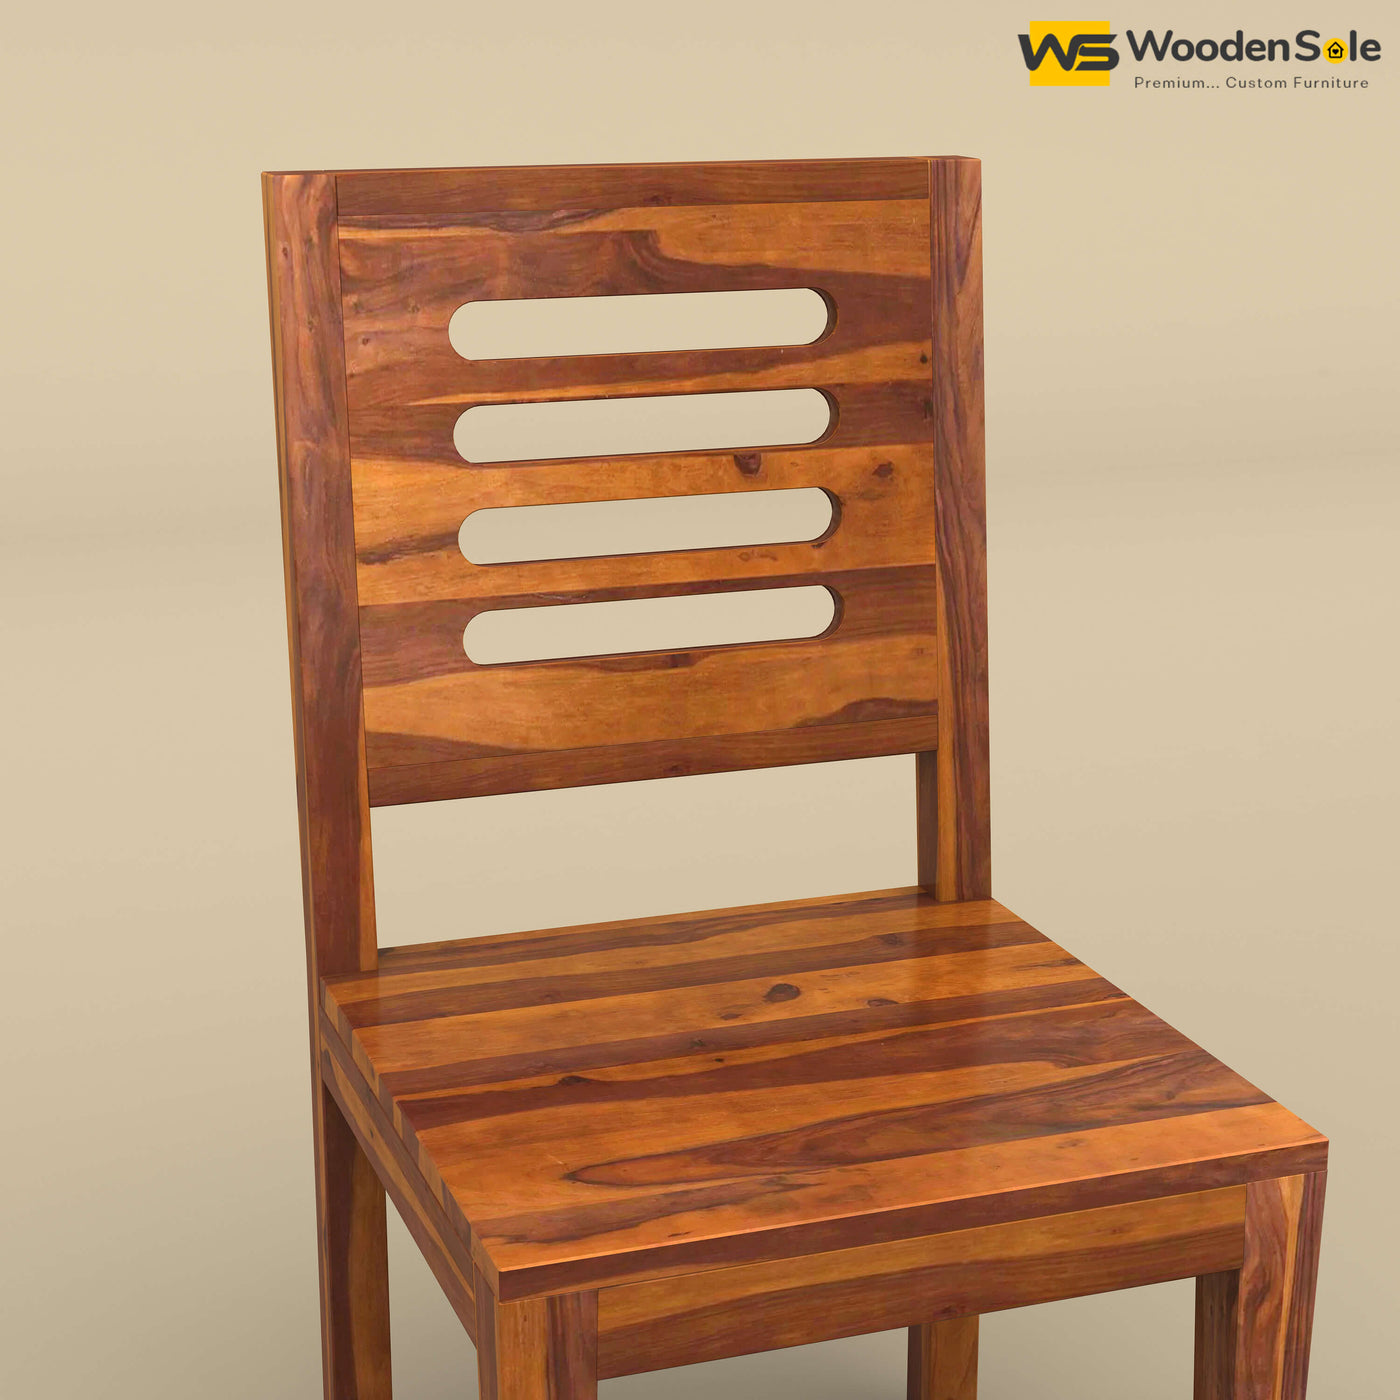 Sheesham Wood 8 Seater Dining Table Set (Honey Finish)